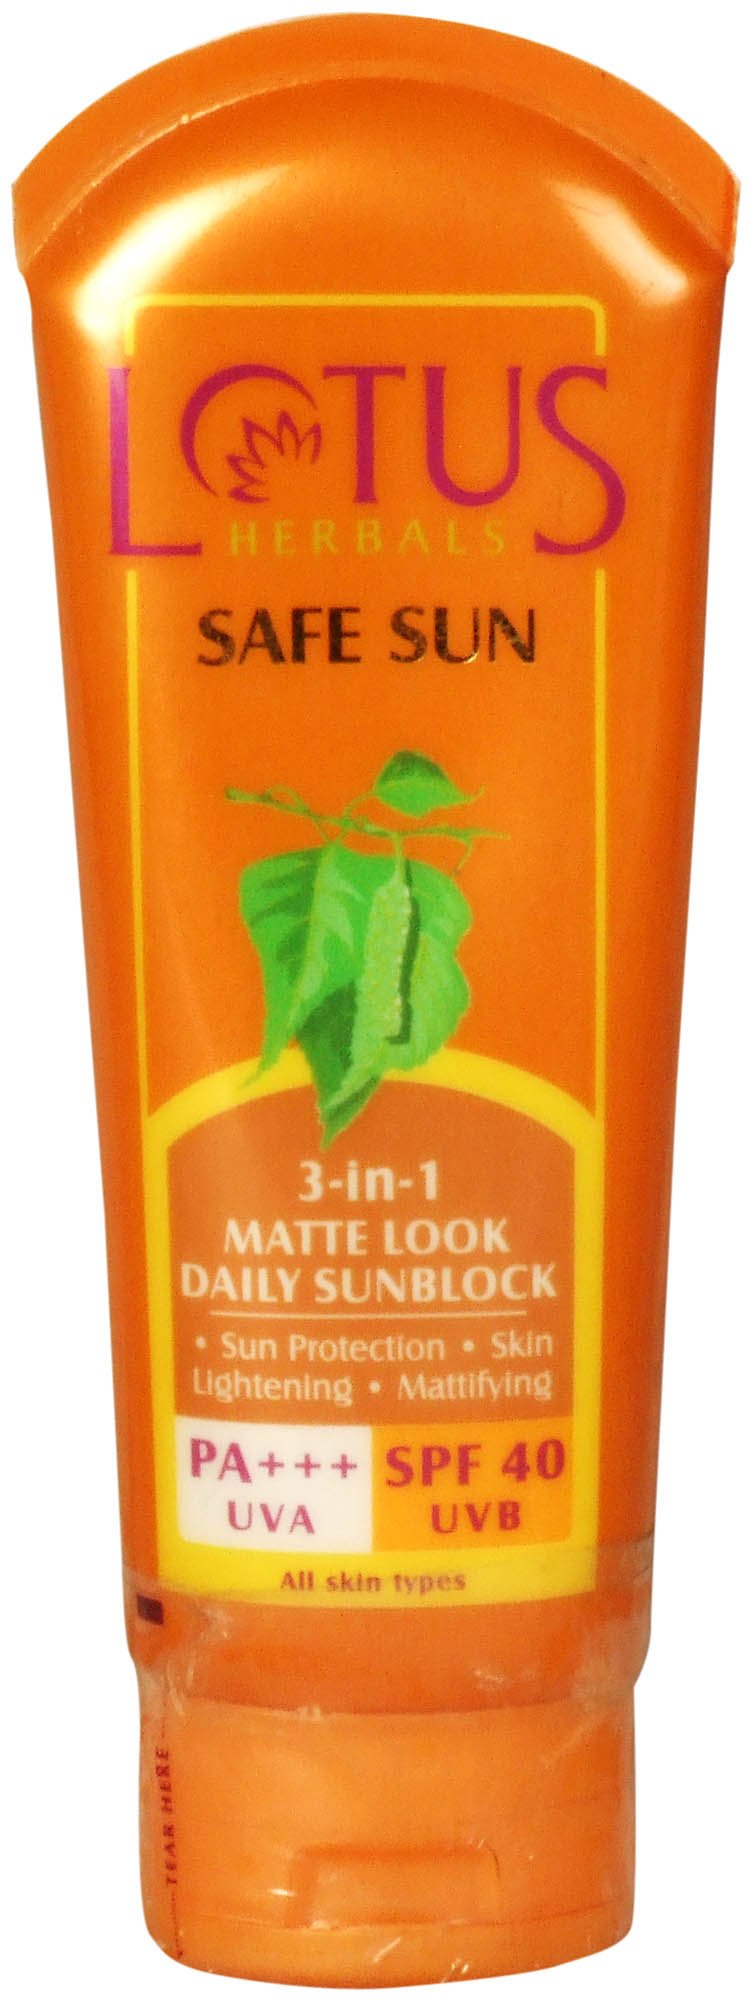 Lotus Herbals Safe Sun (3-in-1 Mattel Look Daily Sunblock) - book cover